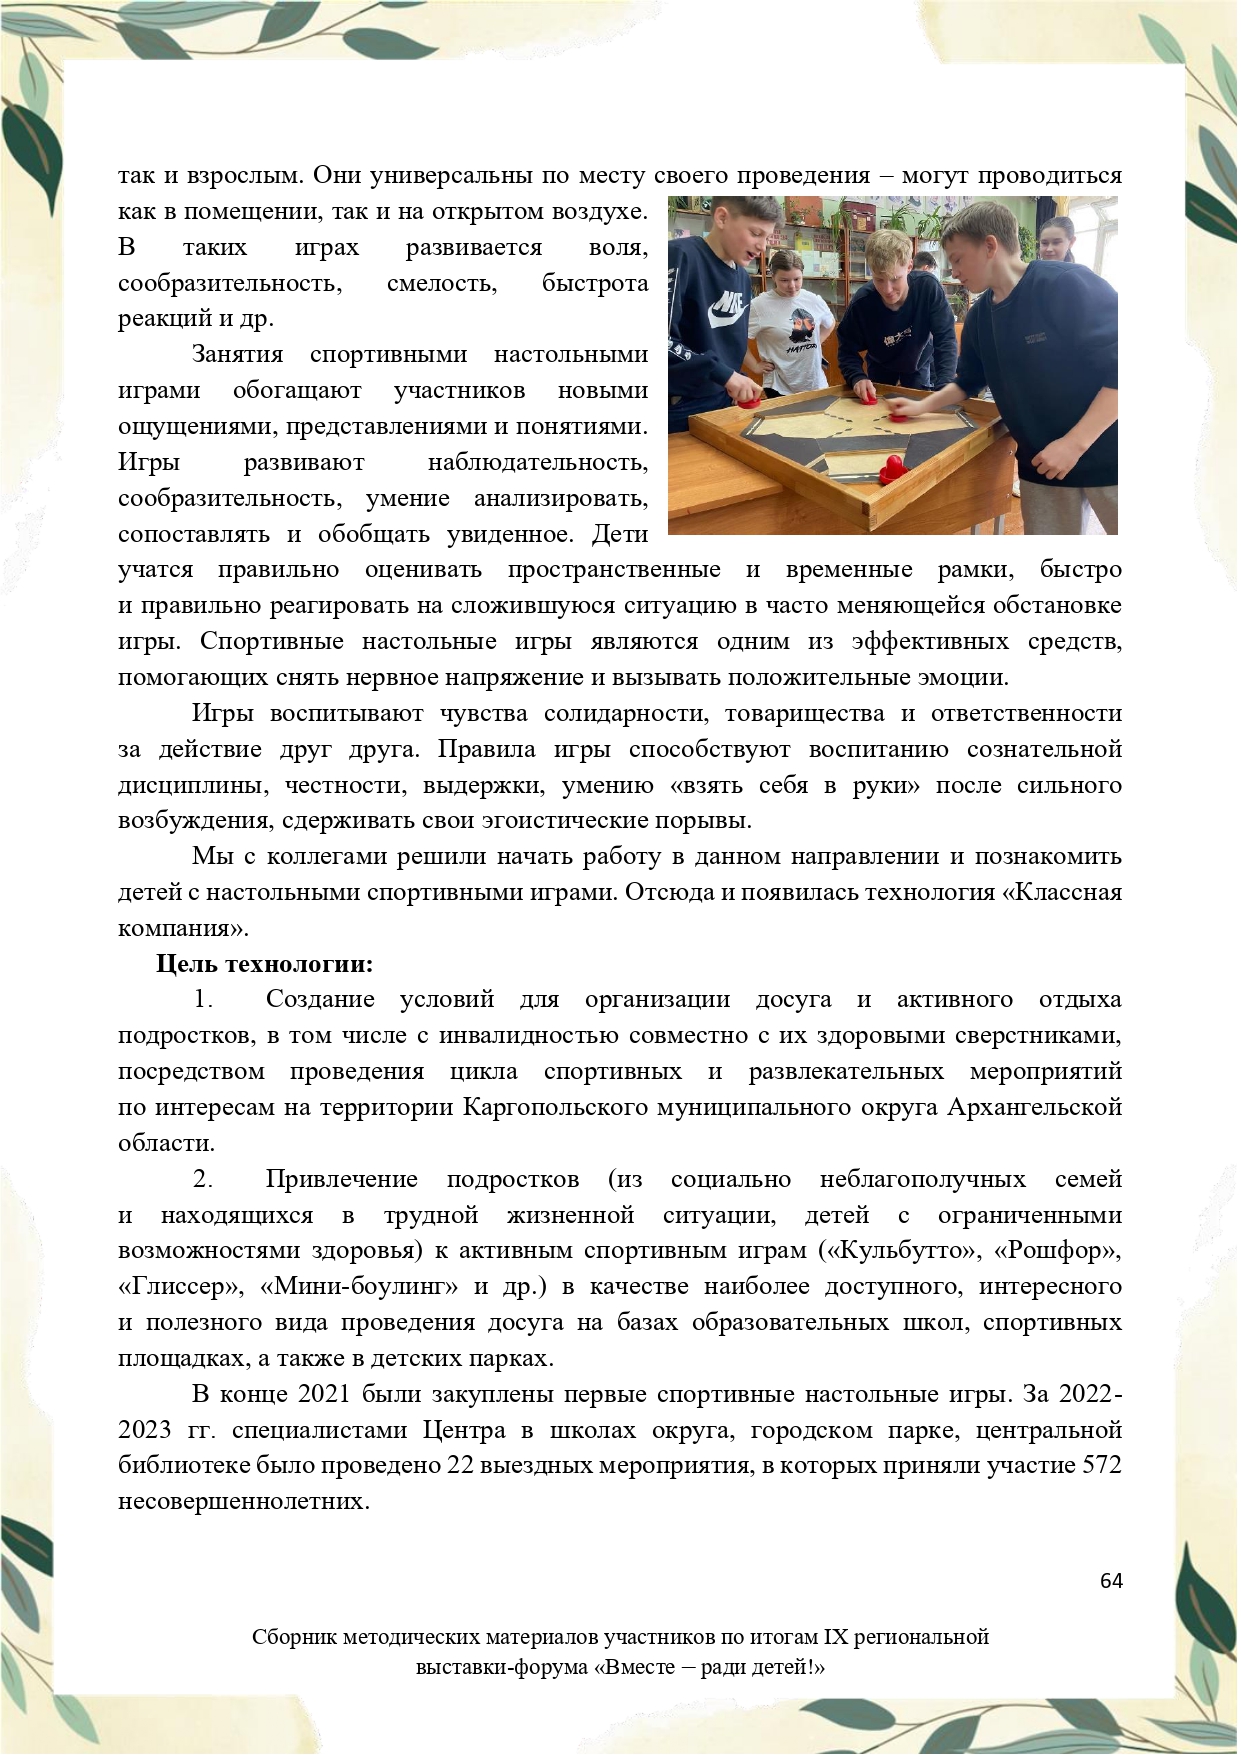 Sbornik_metodicheskikh_materialov_uchastnikov_IX_regionalnoy_vystavki-foruma_Vmeste__radi_detey_33__2023_page-0064